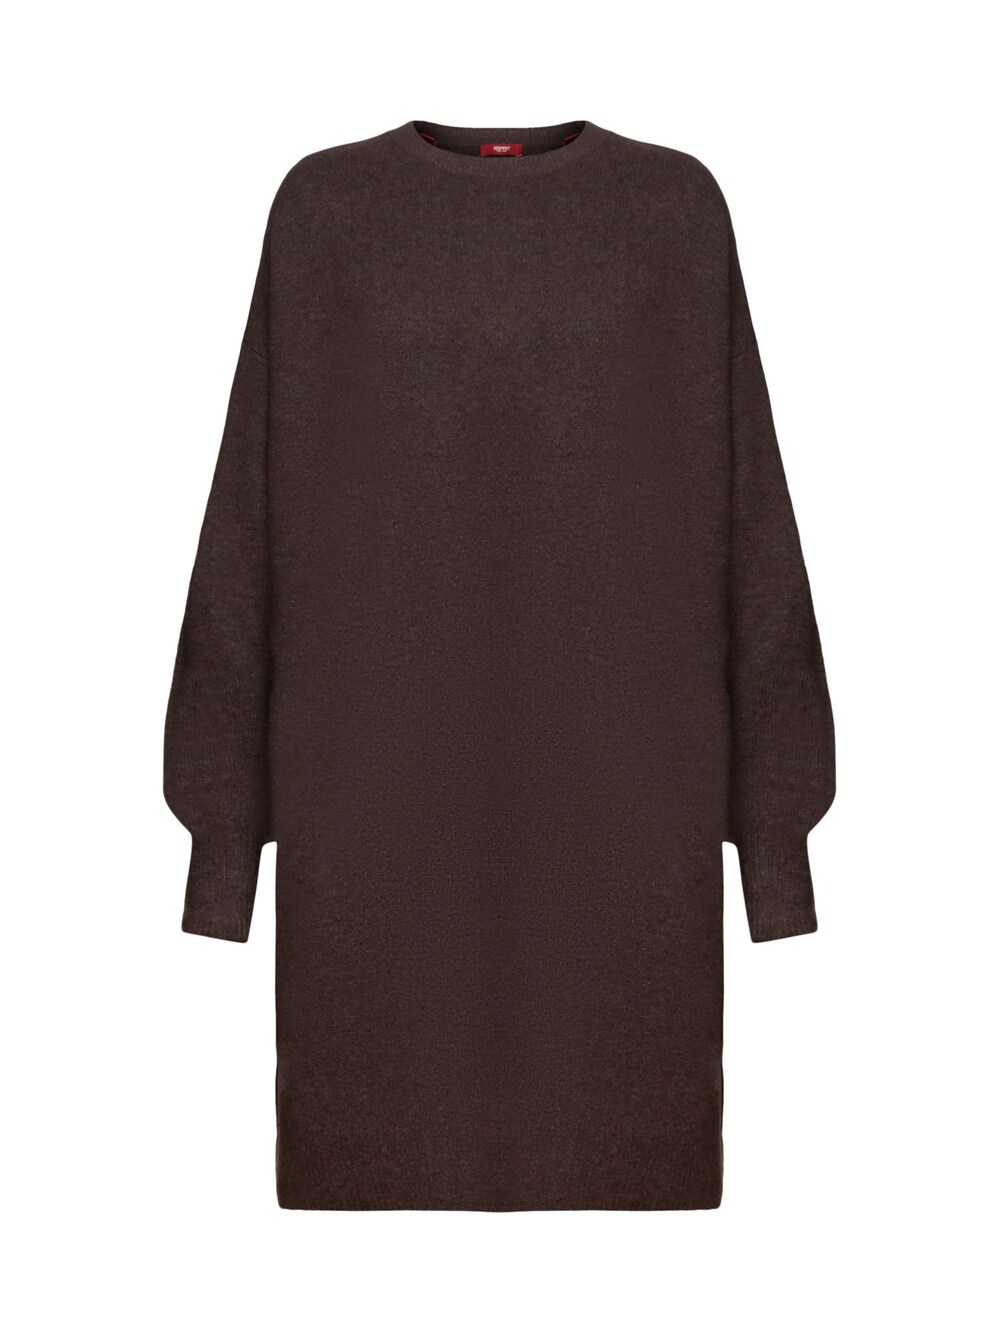 Вязанное платье Esprit, темно коричневый вязанное платье esprit бензин